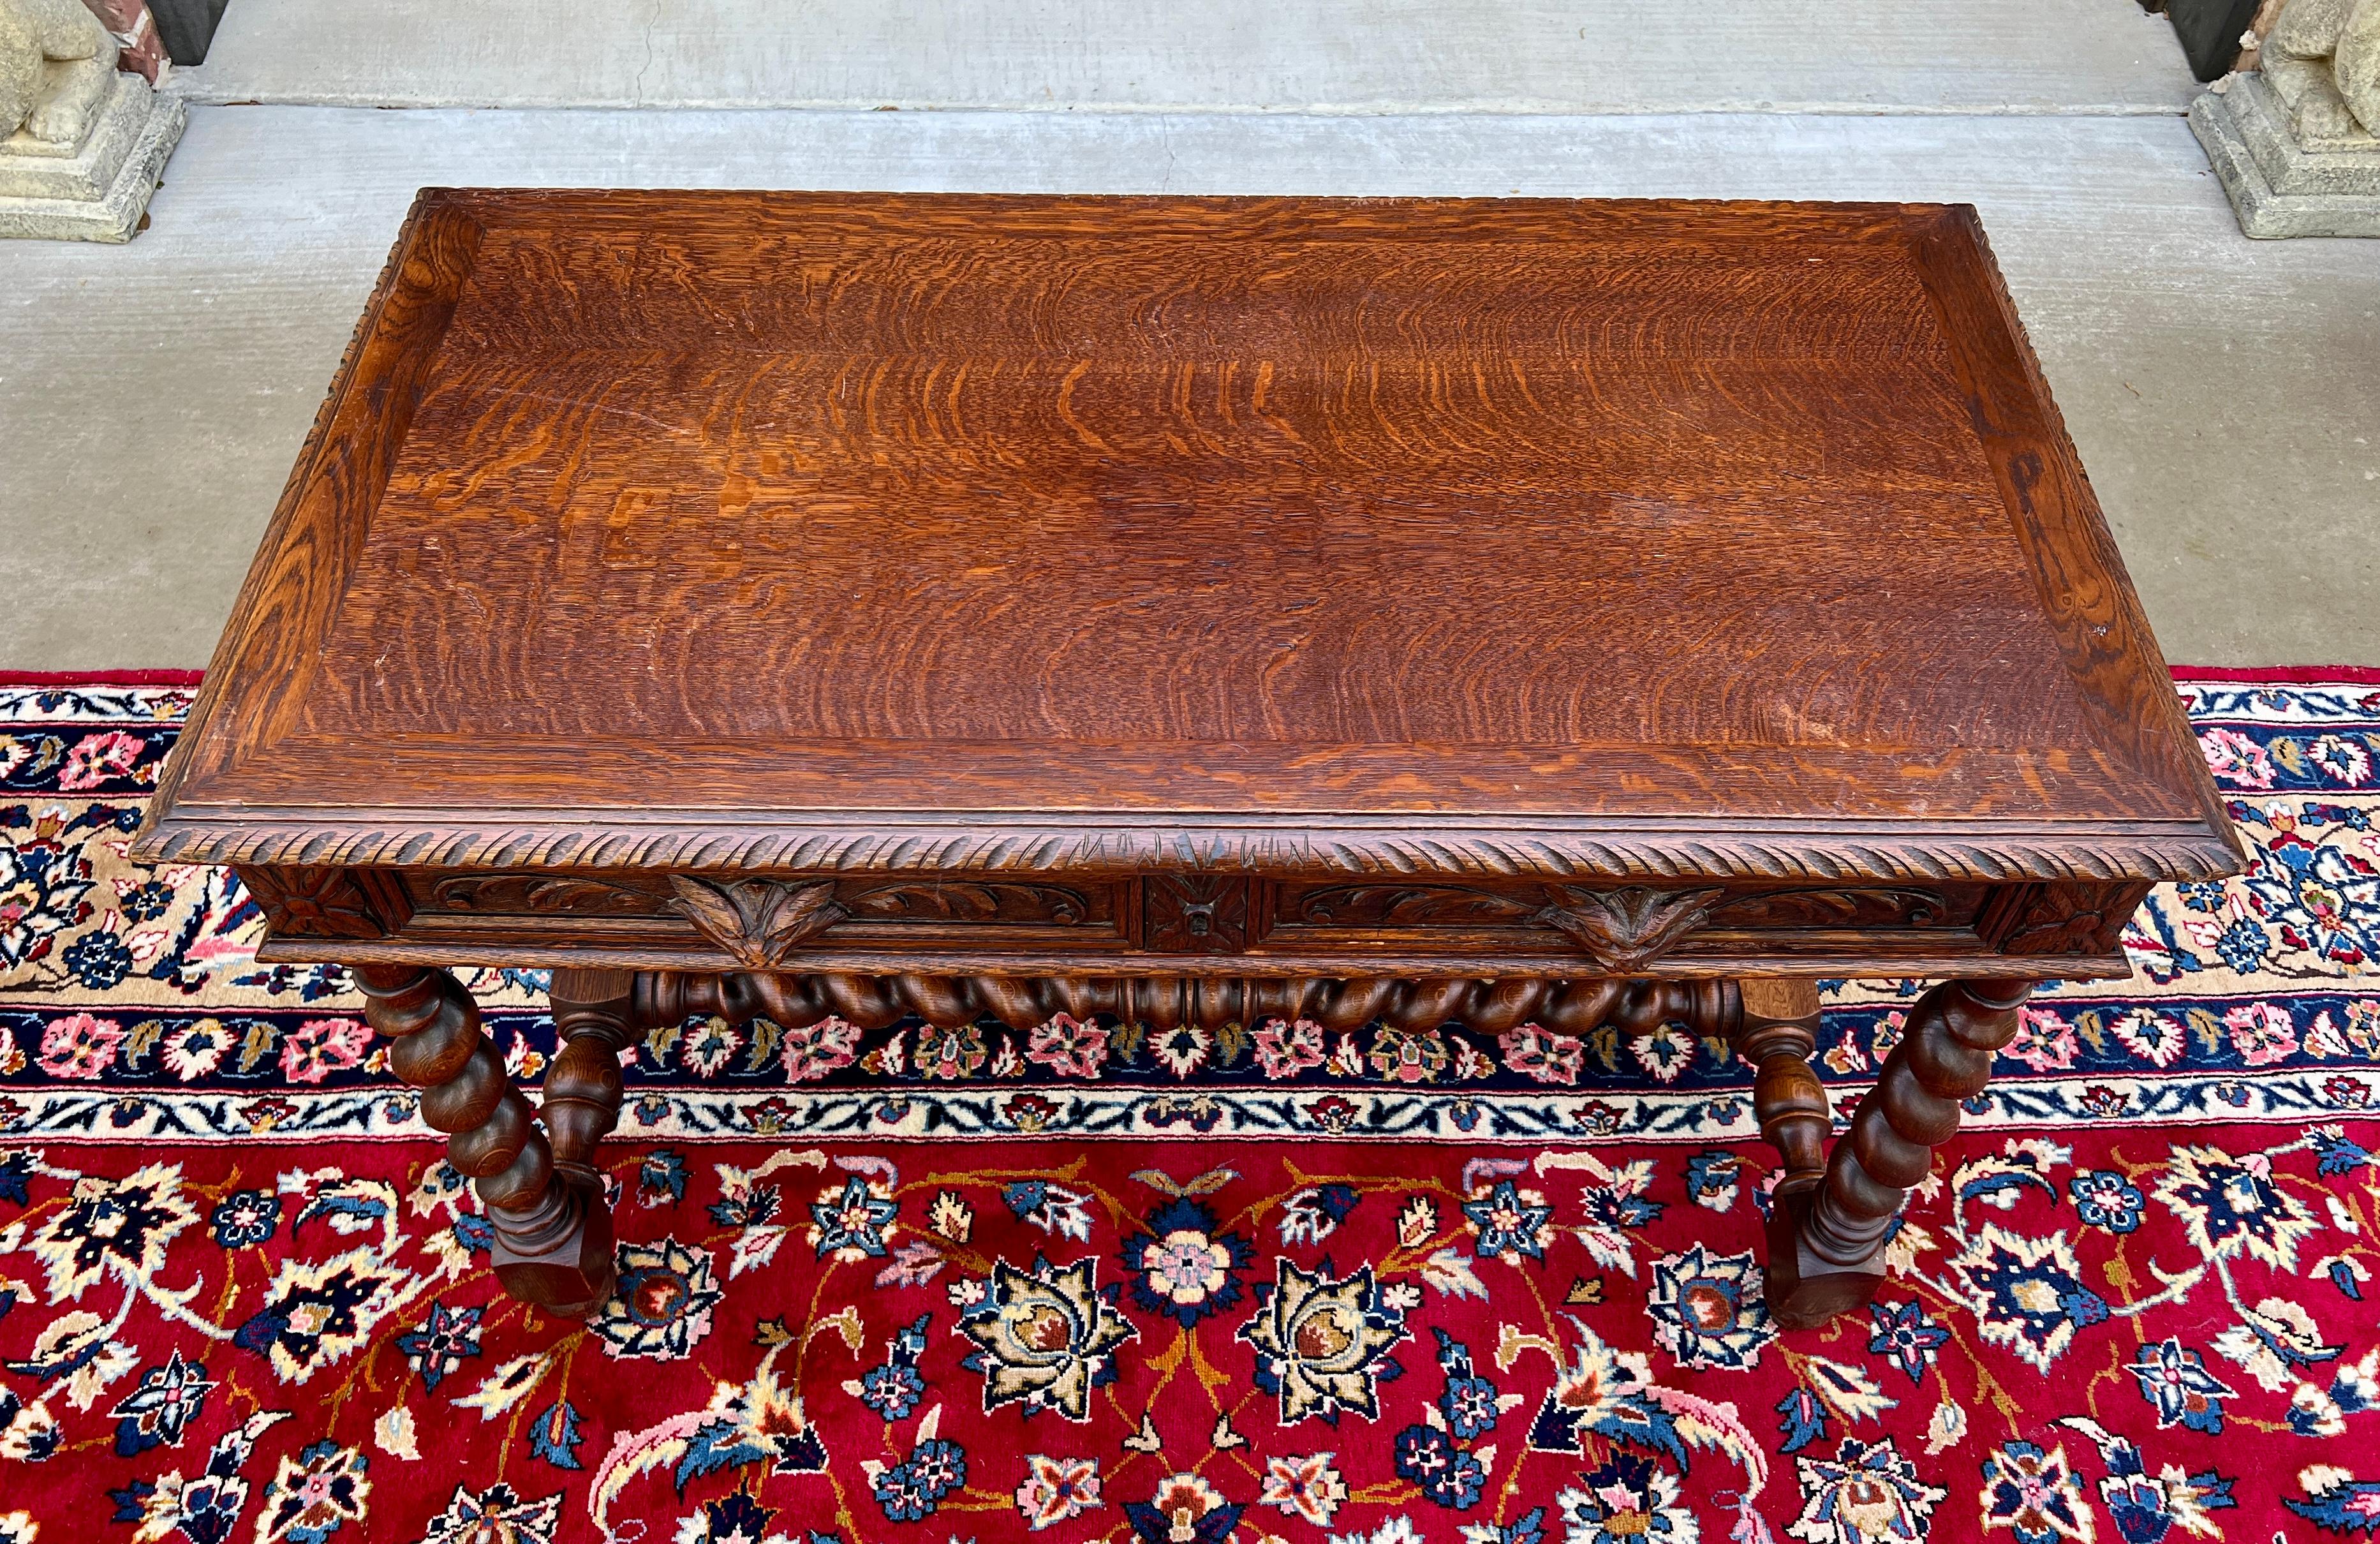 Antique French Desk Table Renaissance Revival Barley Twist Carved Tiger Oak 19C For Sale 14